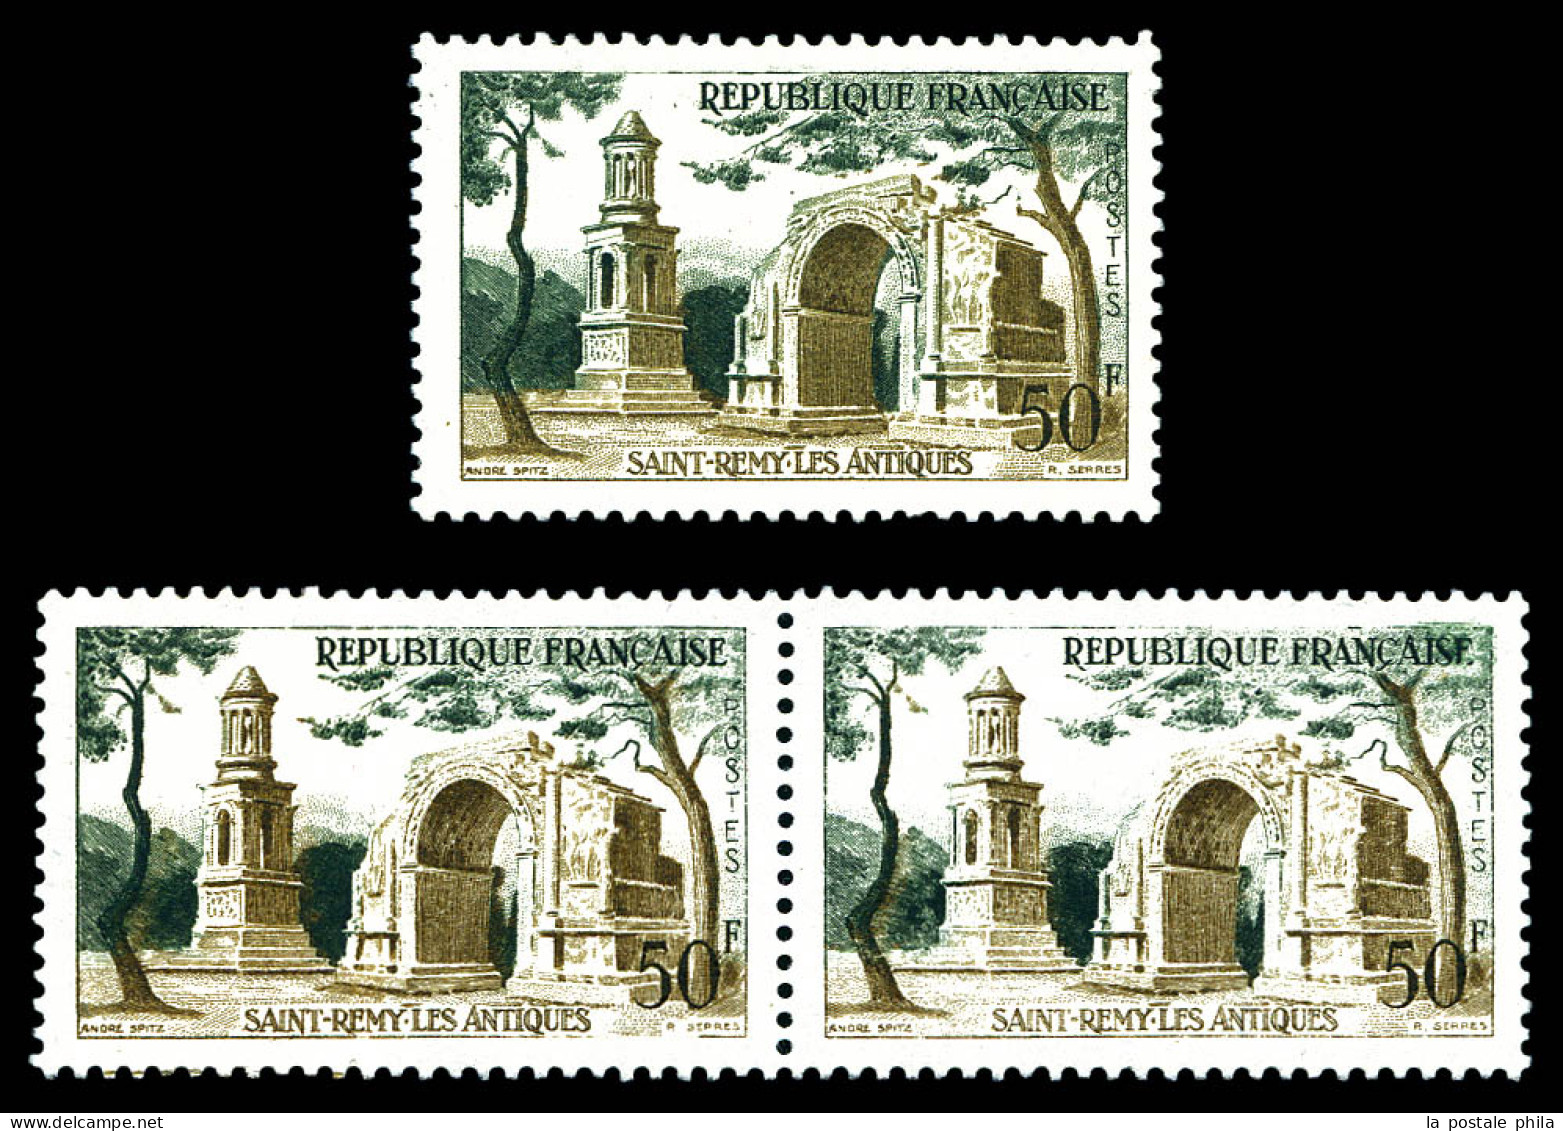 N°1130b, 50f St Rémy Les Antiques: Impression Sur Raccord En Paire + Arche Verte. SUP. R. (signé Brun/certificat)  Quali - Ongebruikt